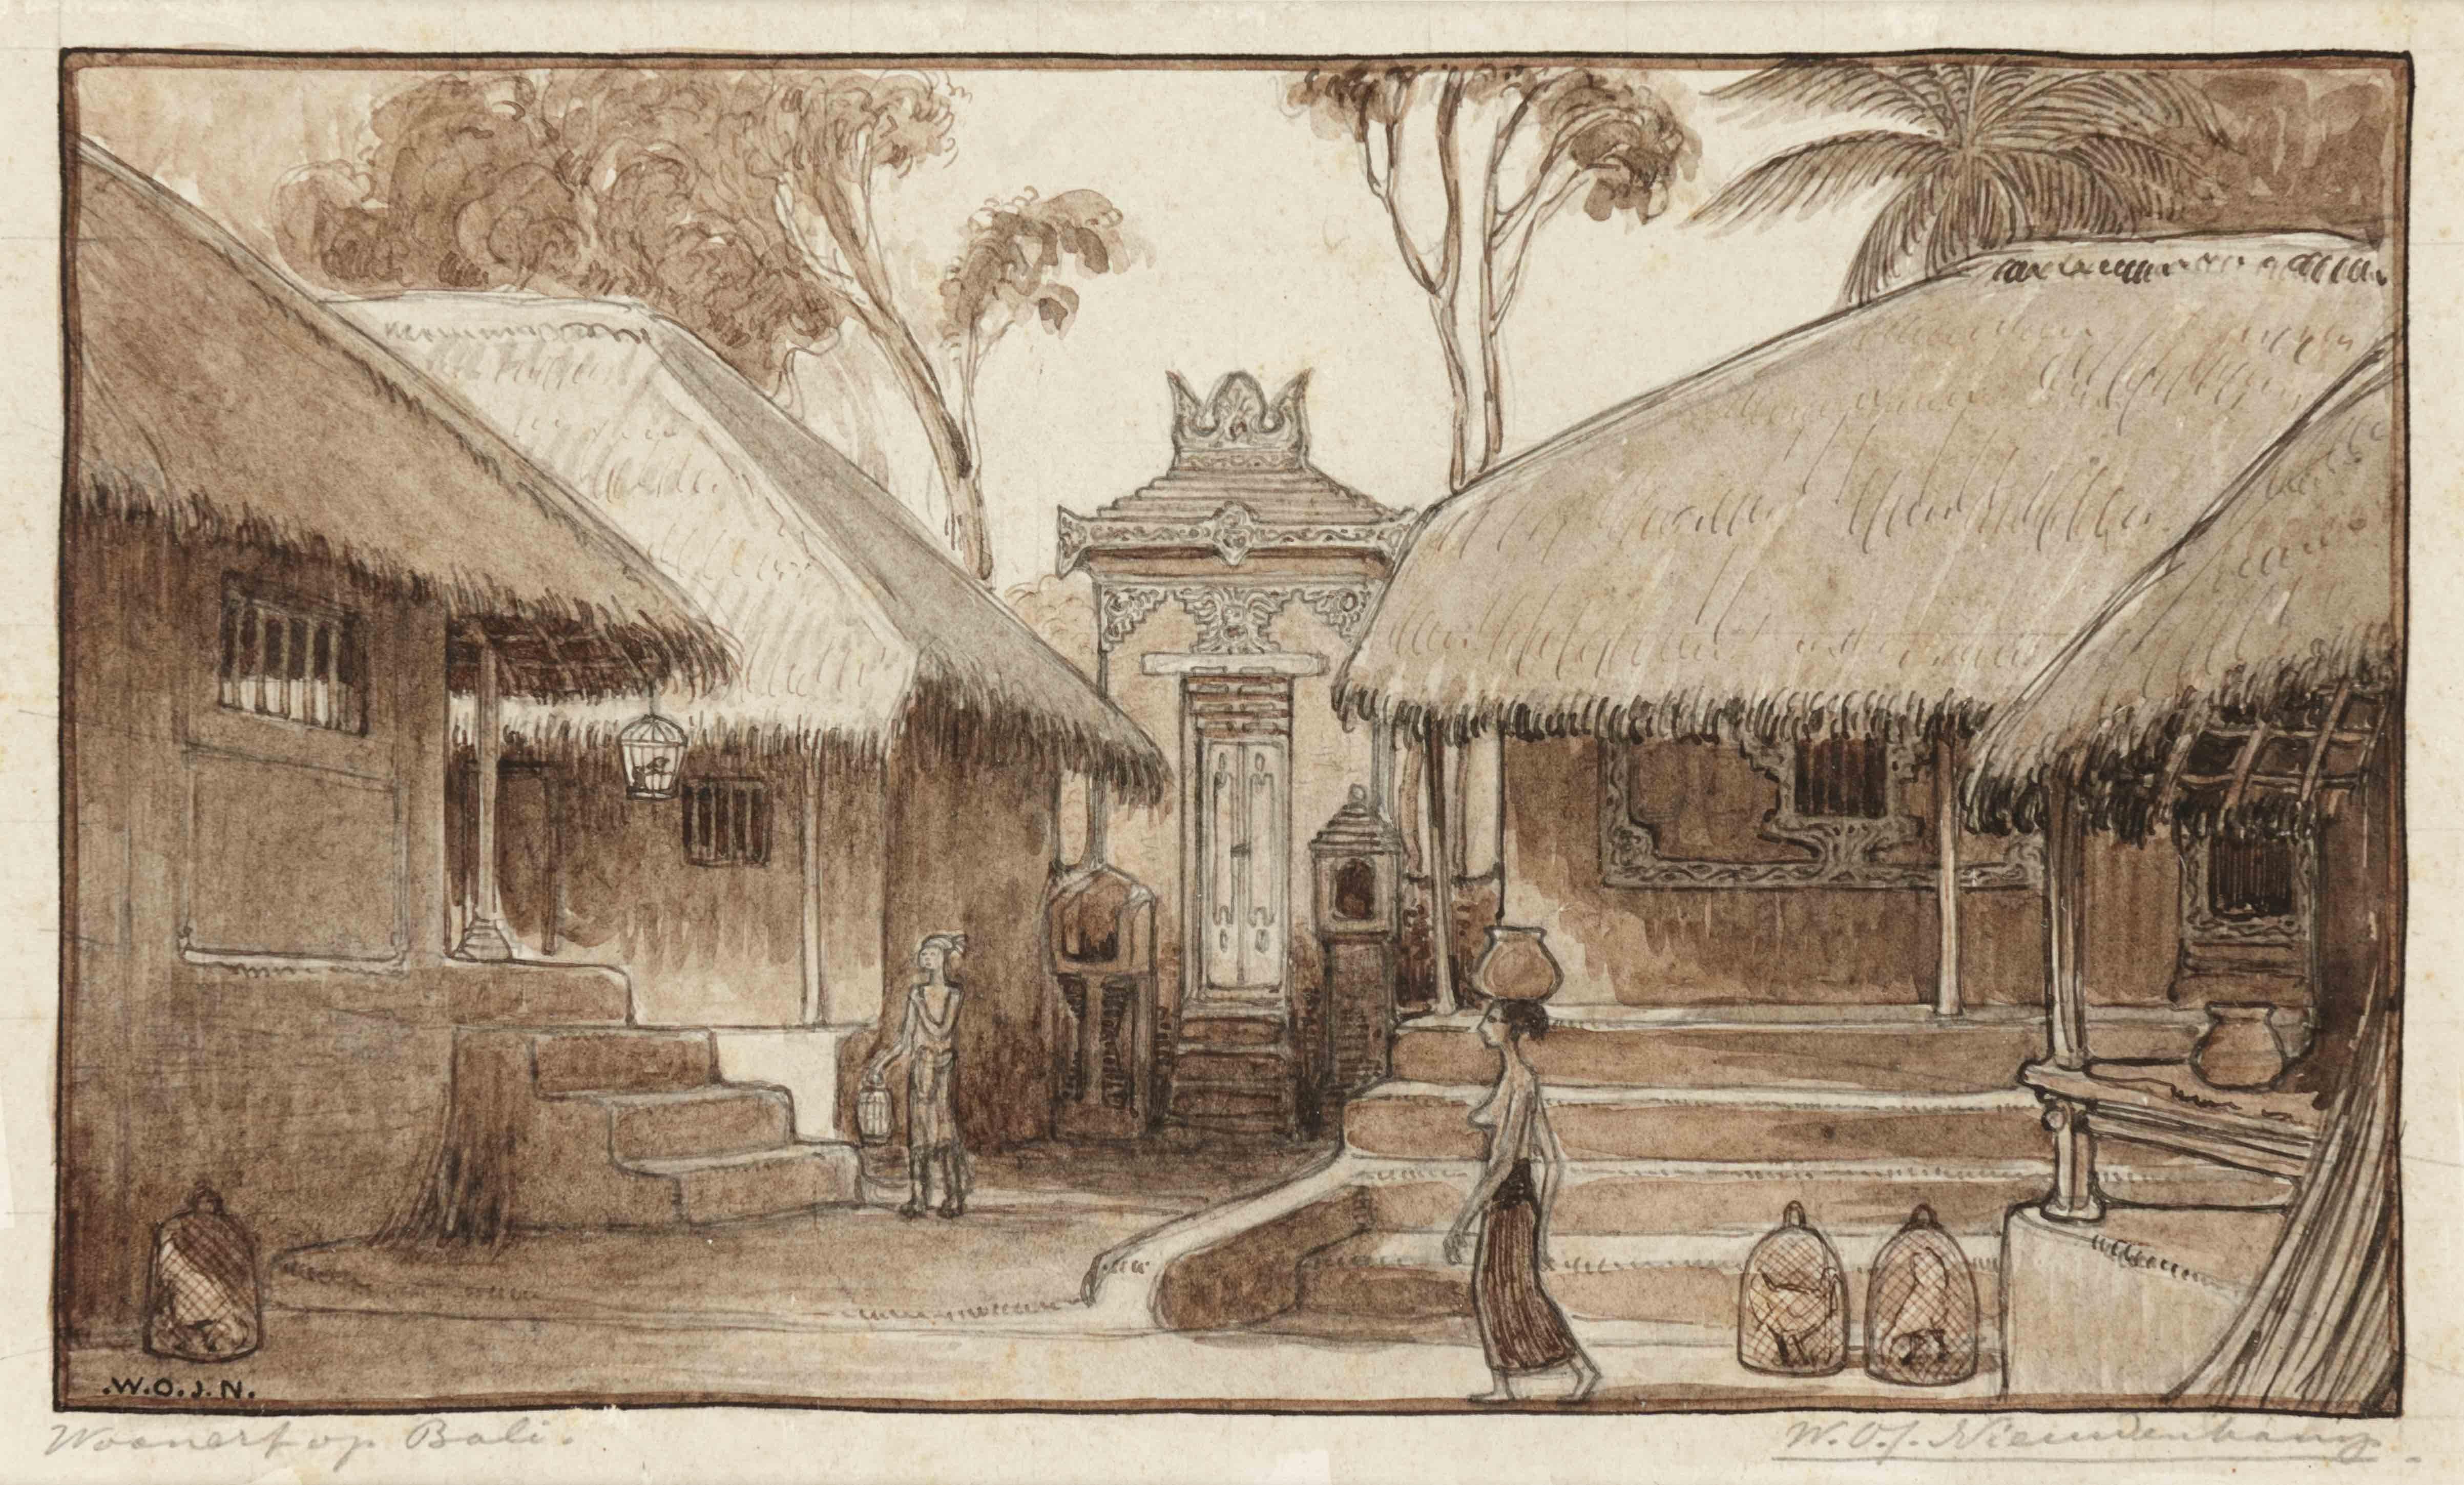 Village Northern Bali, 1906